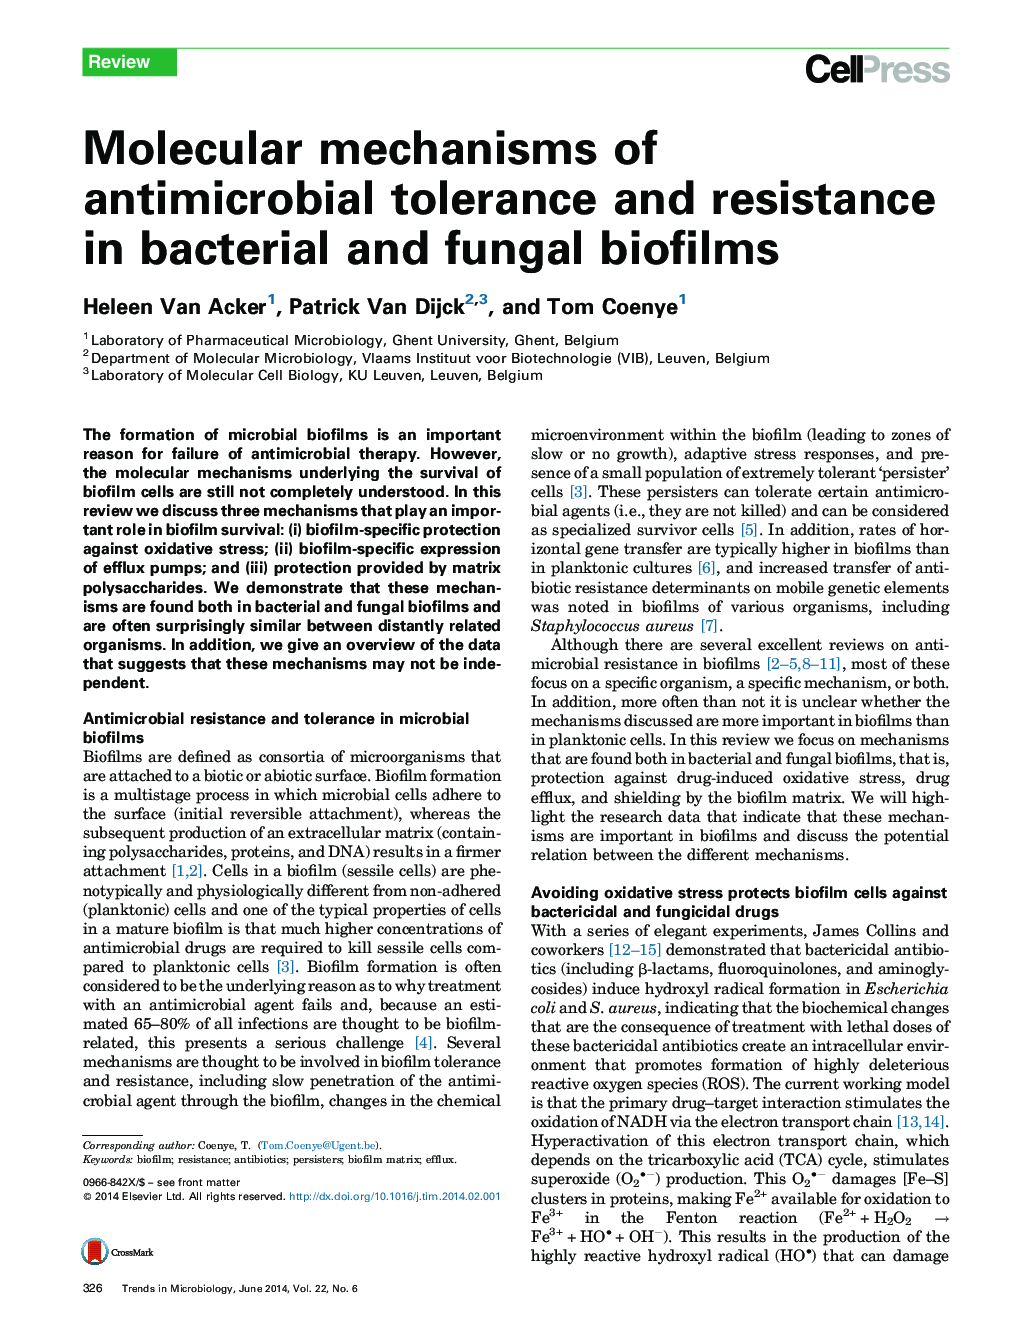 مکانیزم های مولکولی تحمل و مقاومت در برابر عفونت های باکتریایی و قارچی 